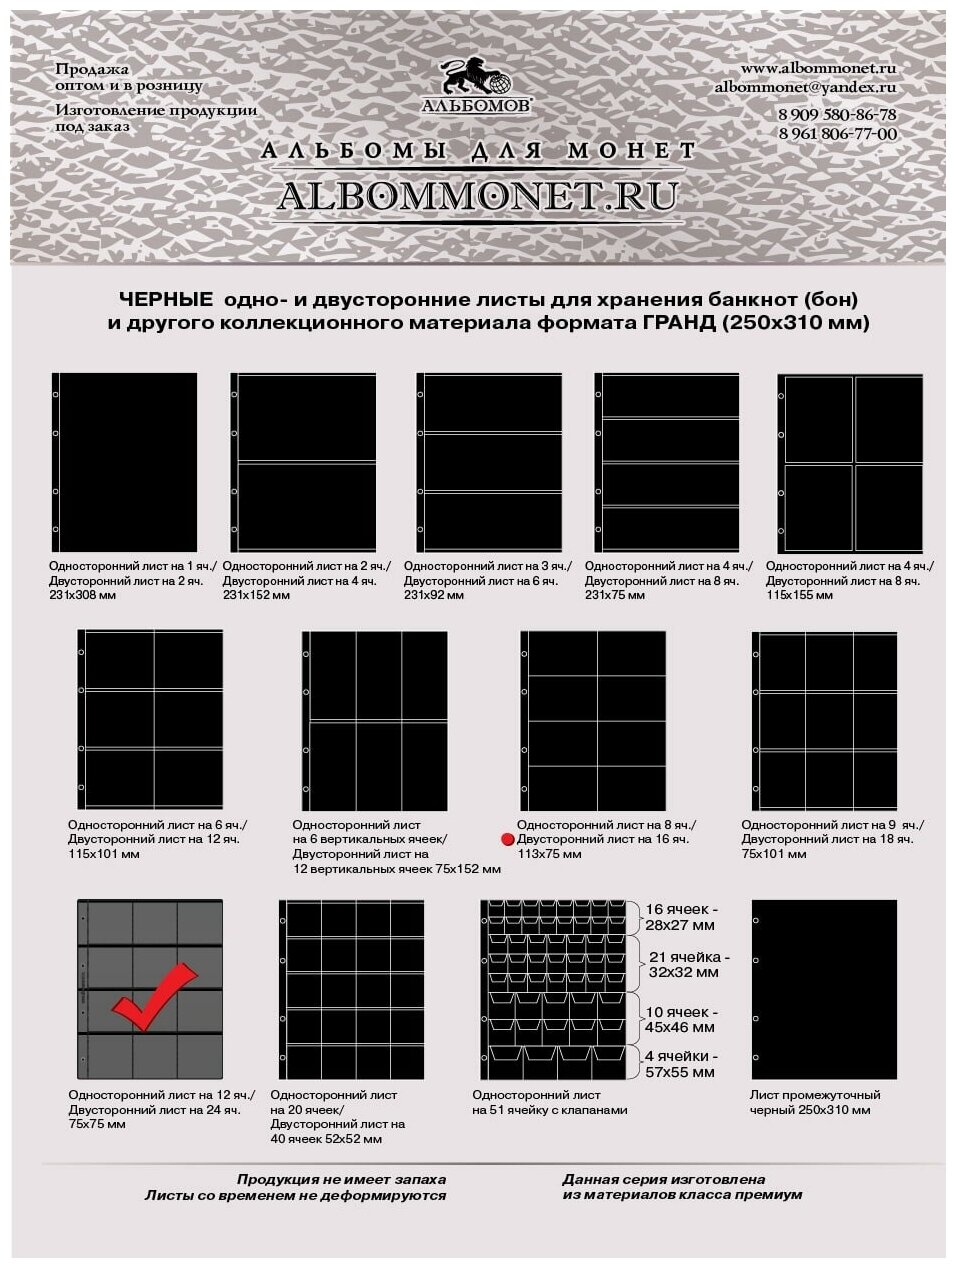 Комплект из 10-ти листов Albommonet "Стандарт" двусторонний на черной основе на 24 ячейки. Формат "Grand"